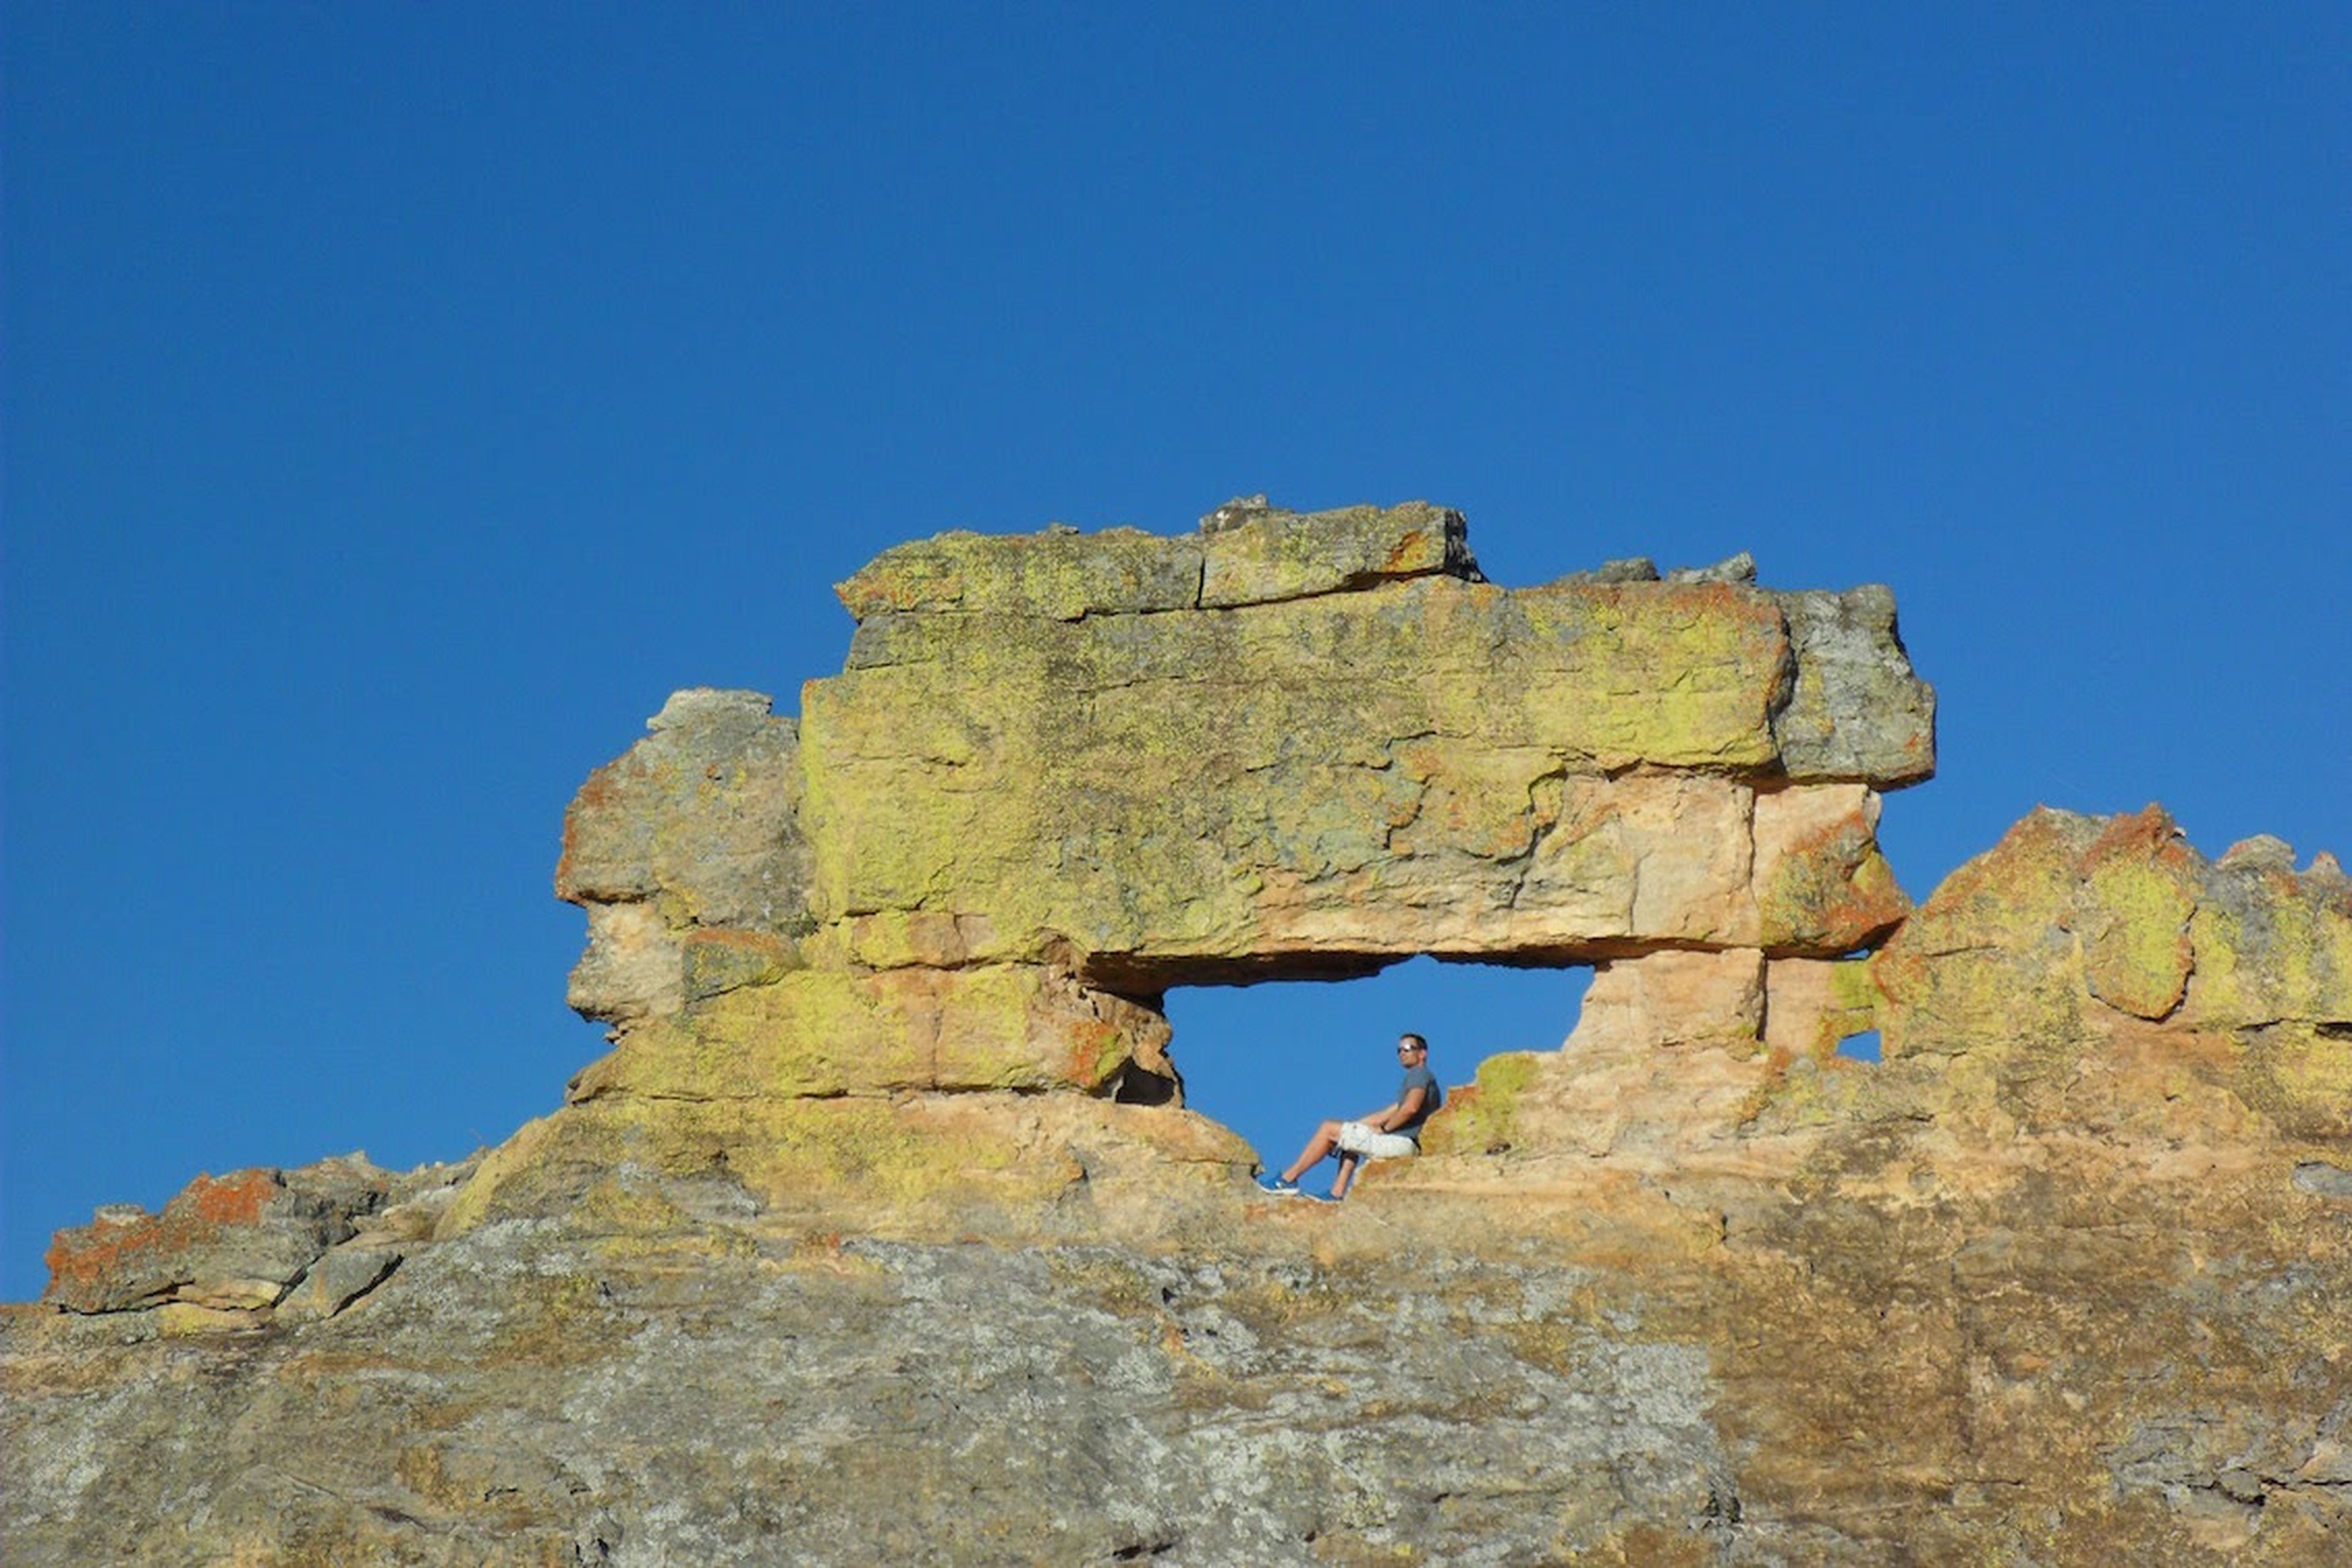 Una de las sorprendentes formaciones rocosas en el Parque Nacional de Isalo